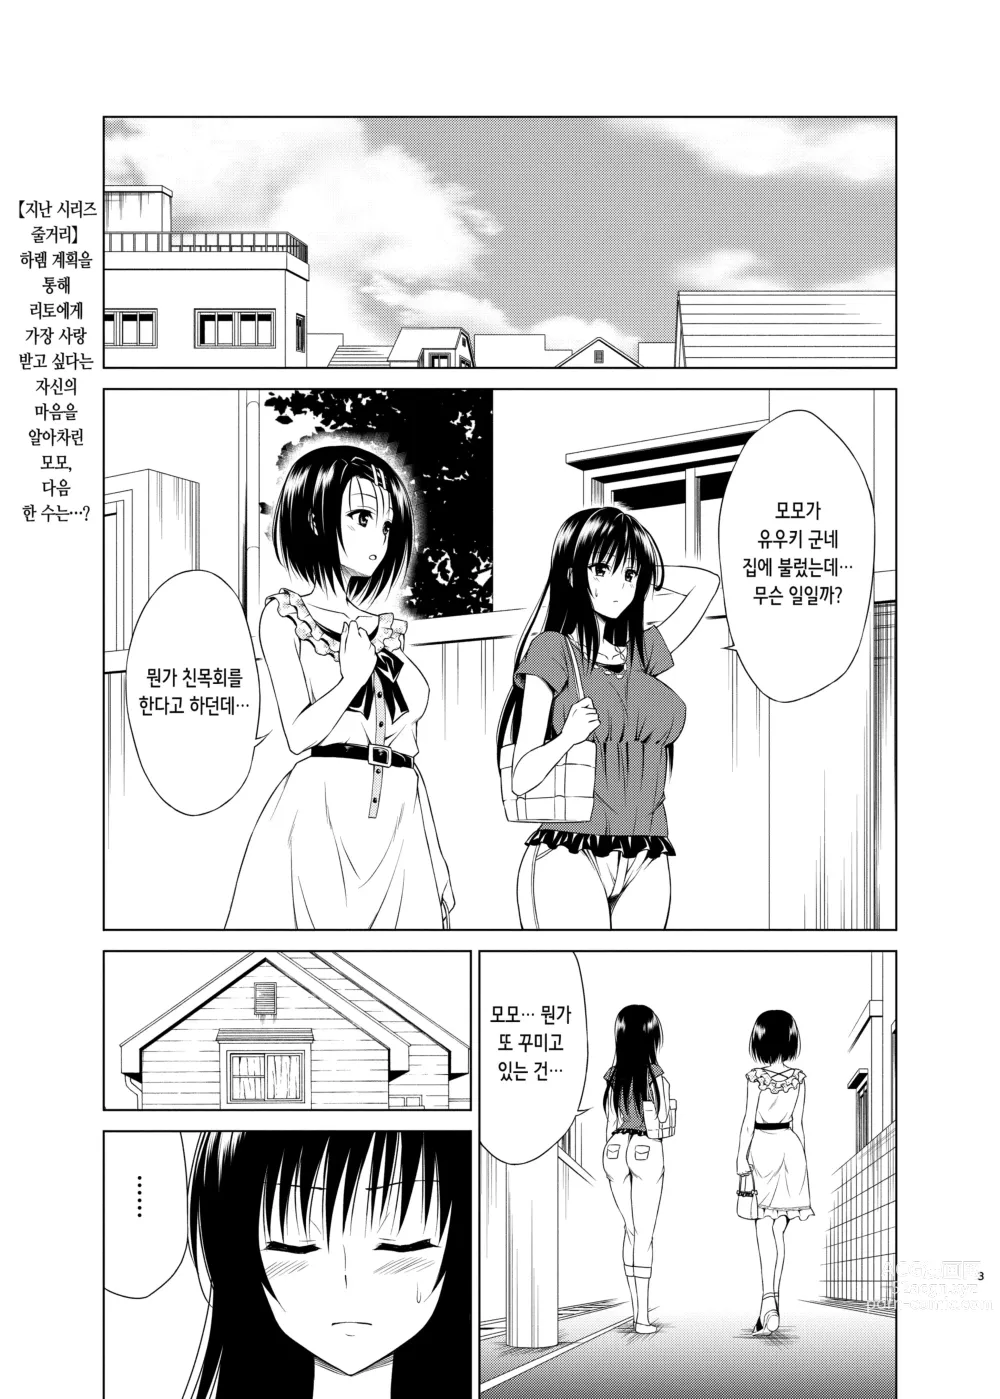 Page 2 of doujinshi 노려라! 낙원계획 RX vol. 1